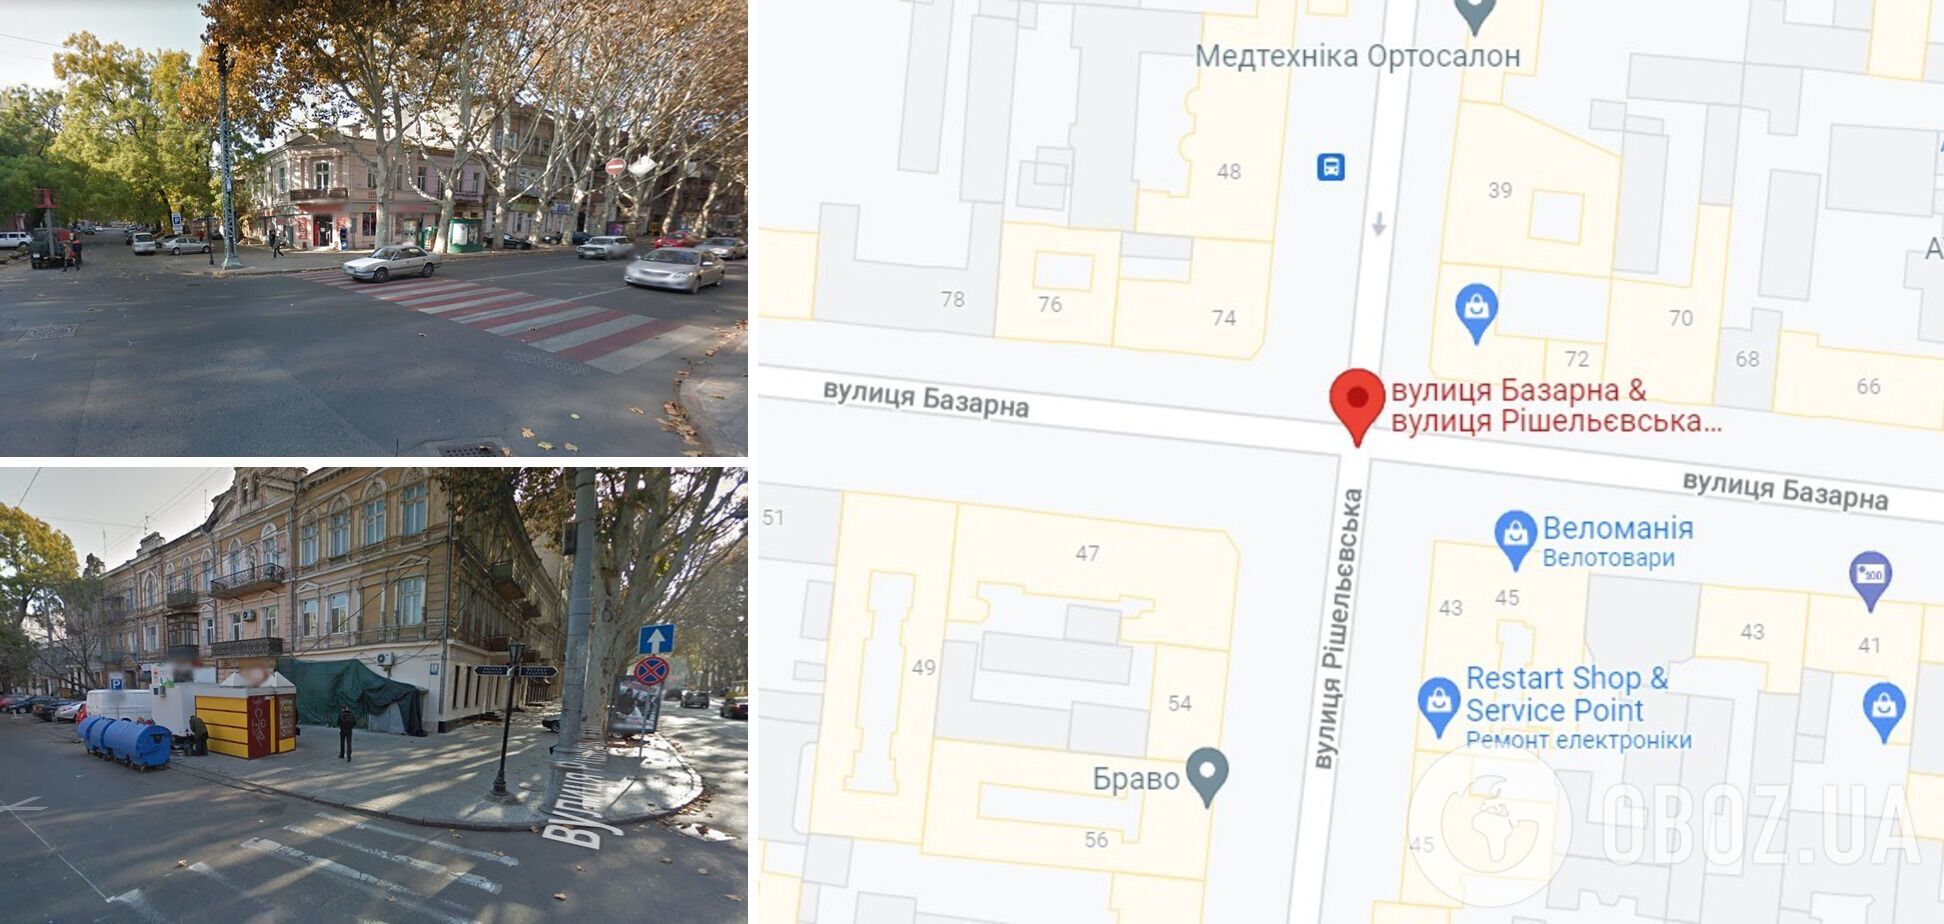 ДТП трапилася на перехресті вулиць Рішельєвська та Базарна